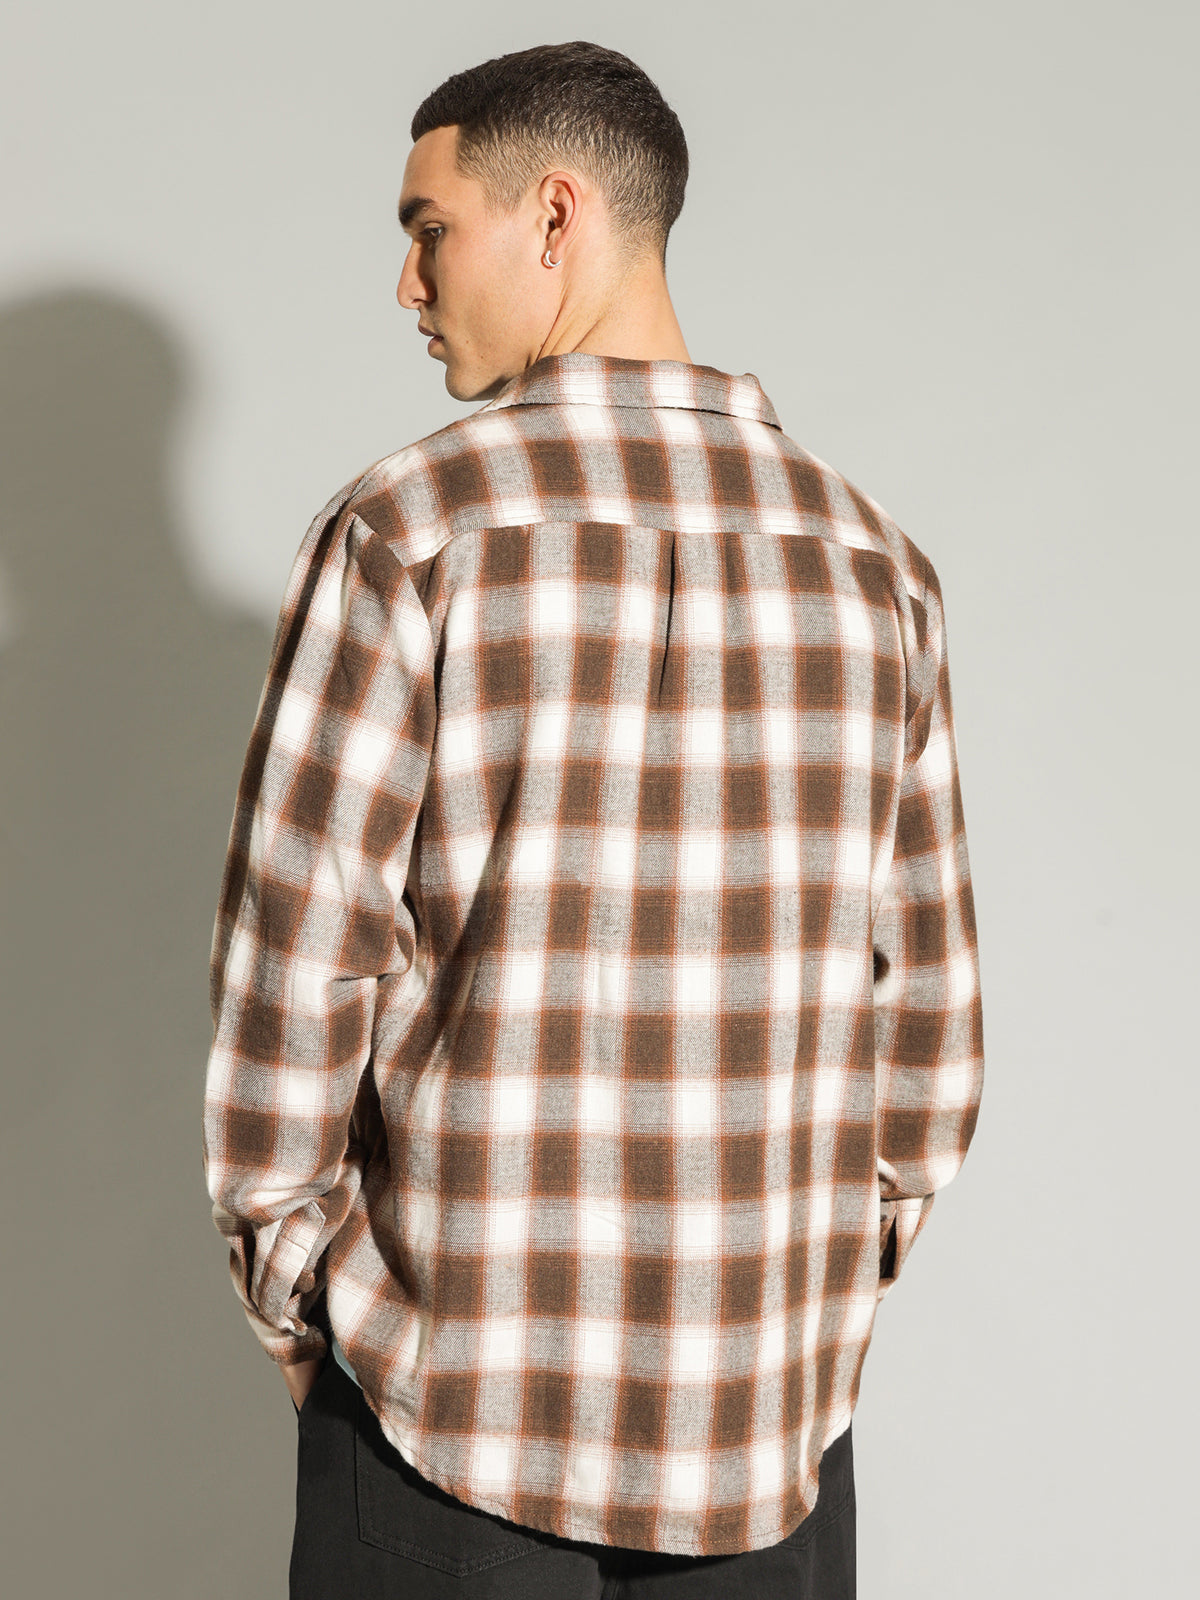 Vignette Long Sleeve Shirt in Brown &amp; White